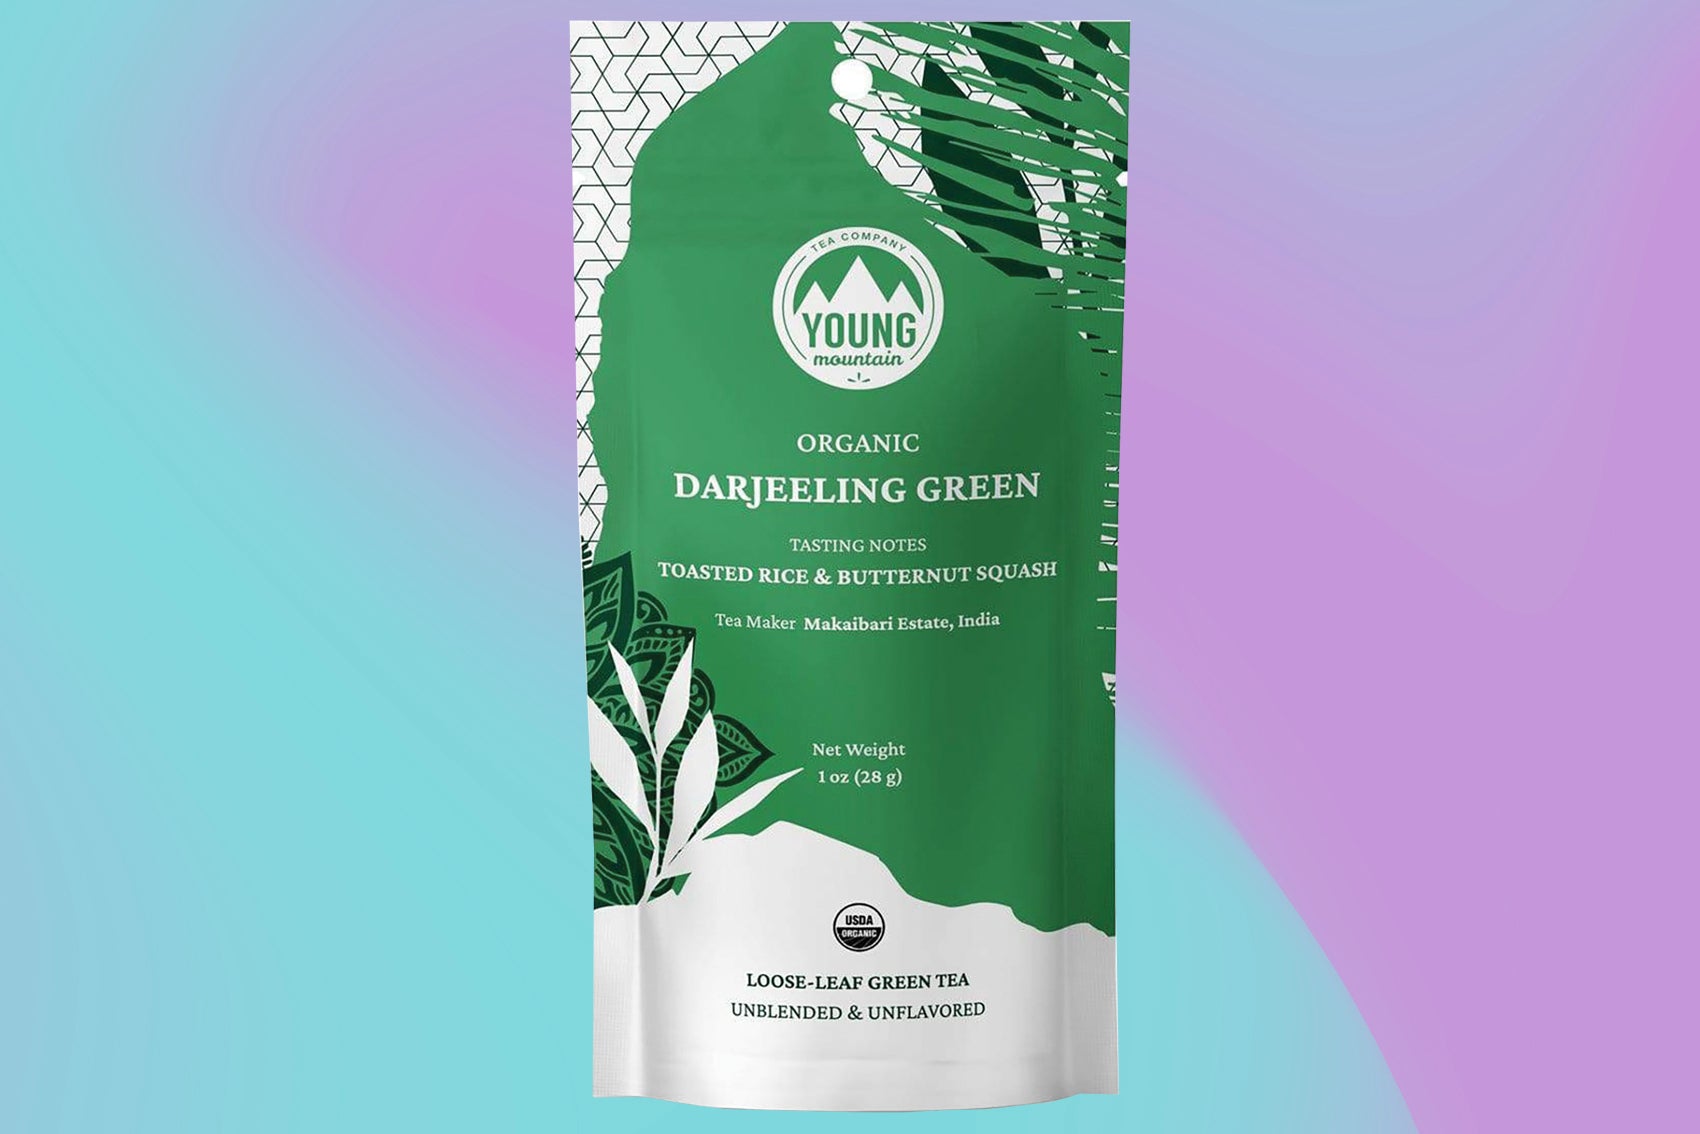 Young Mountain Darjeerling tea